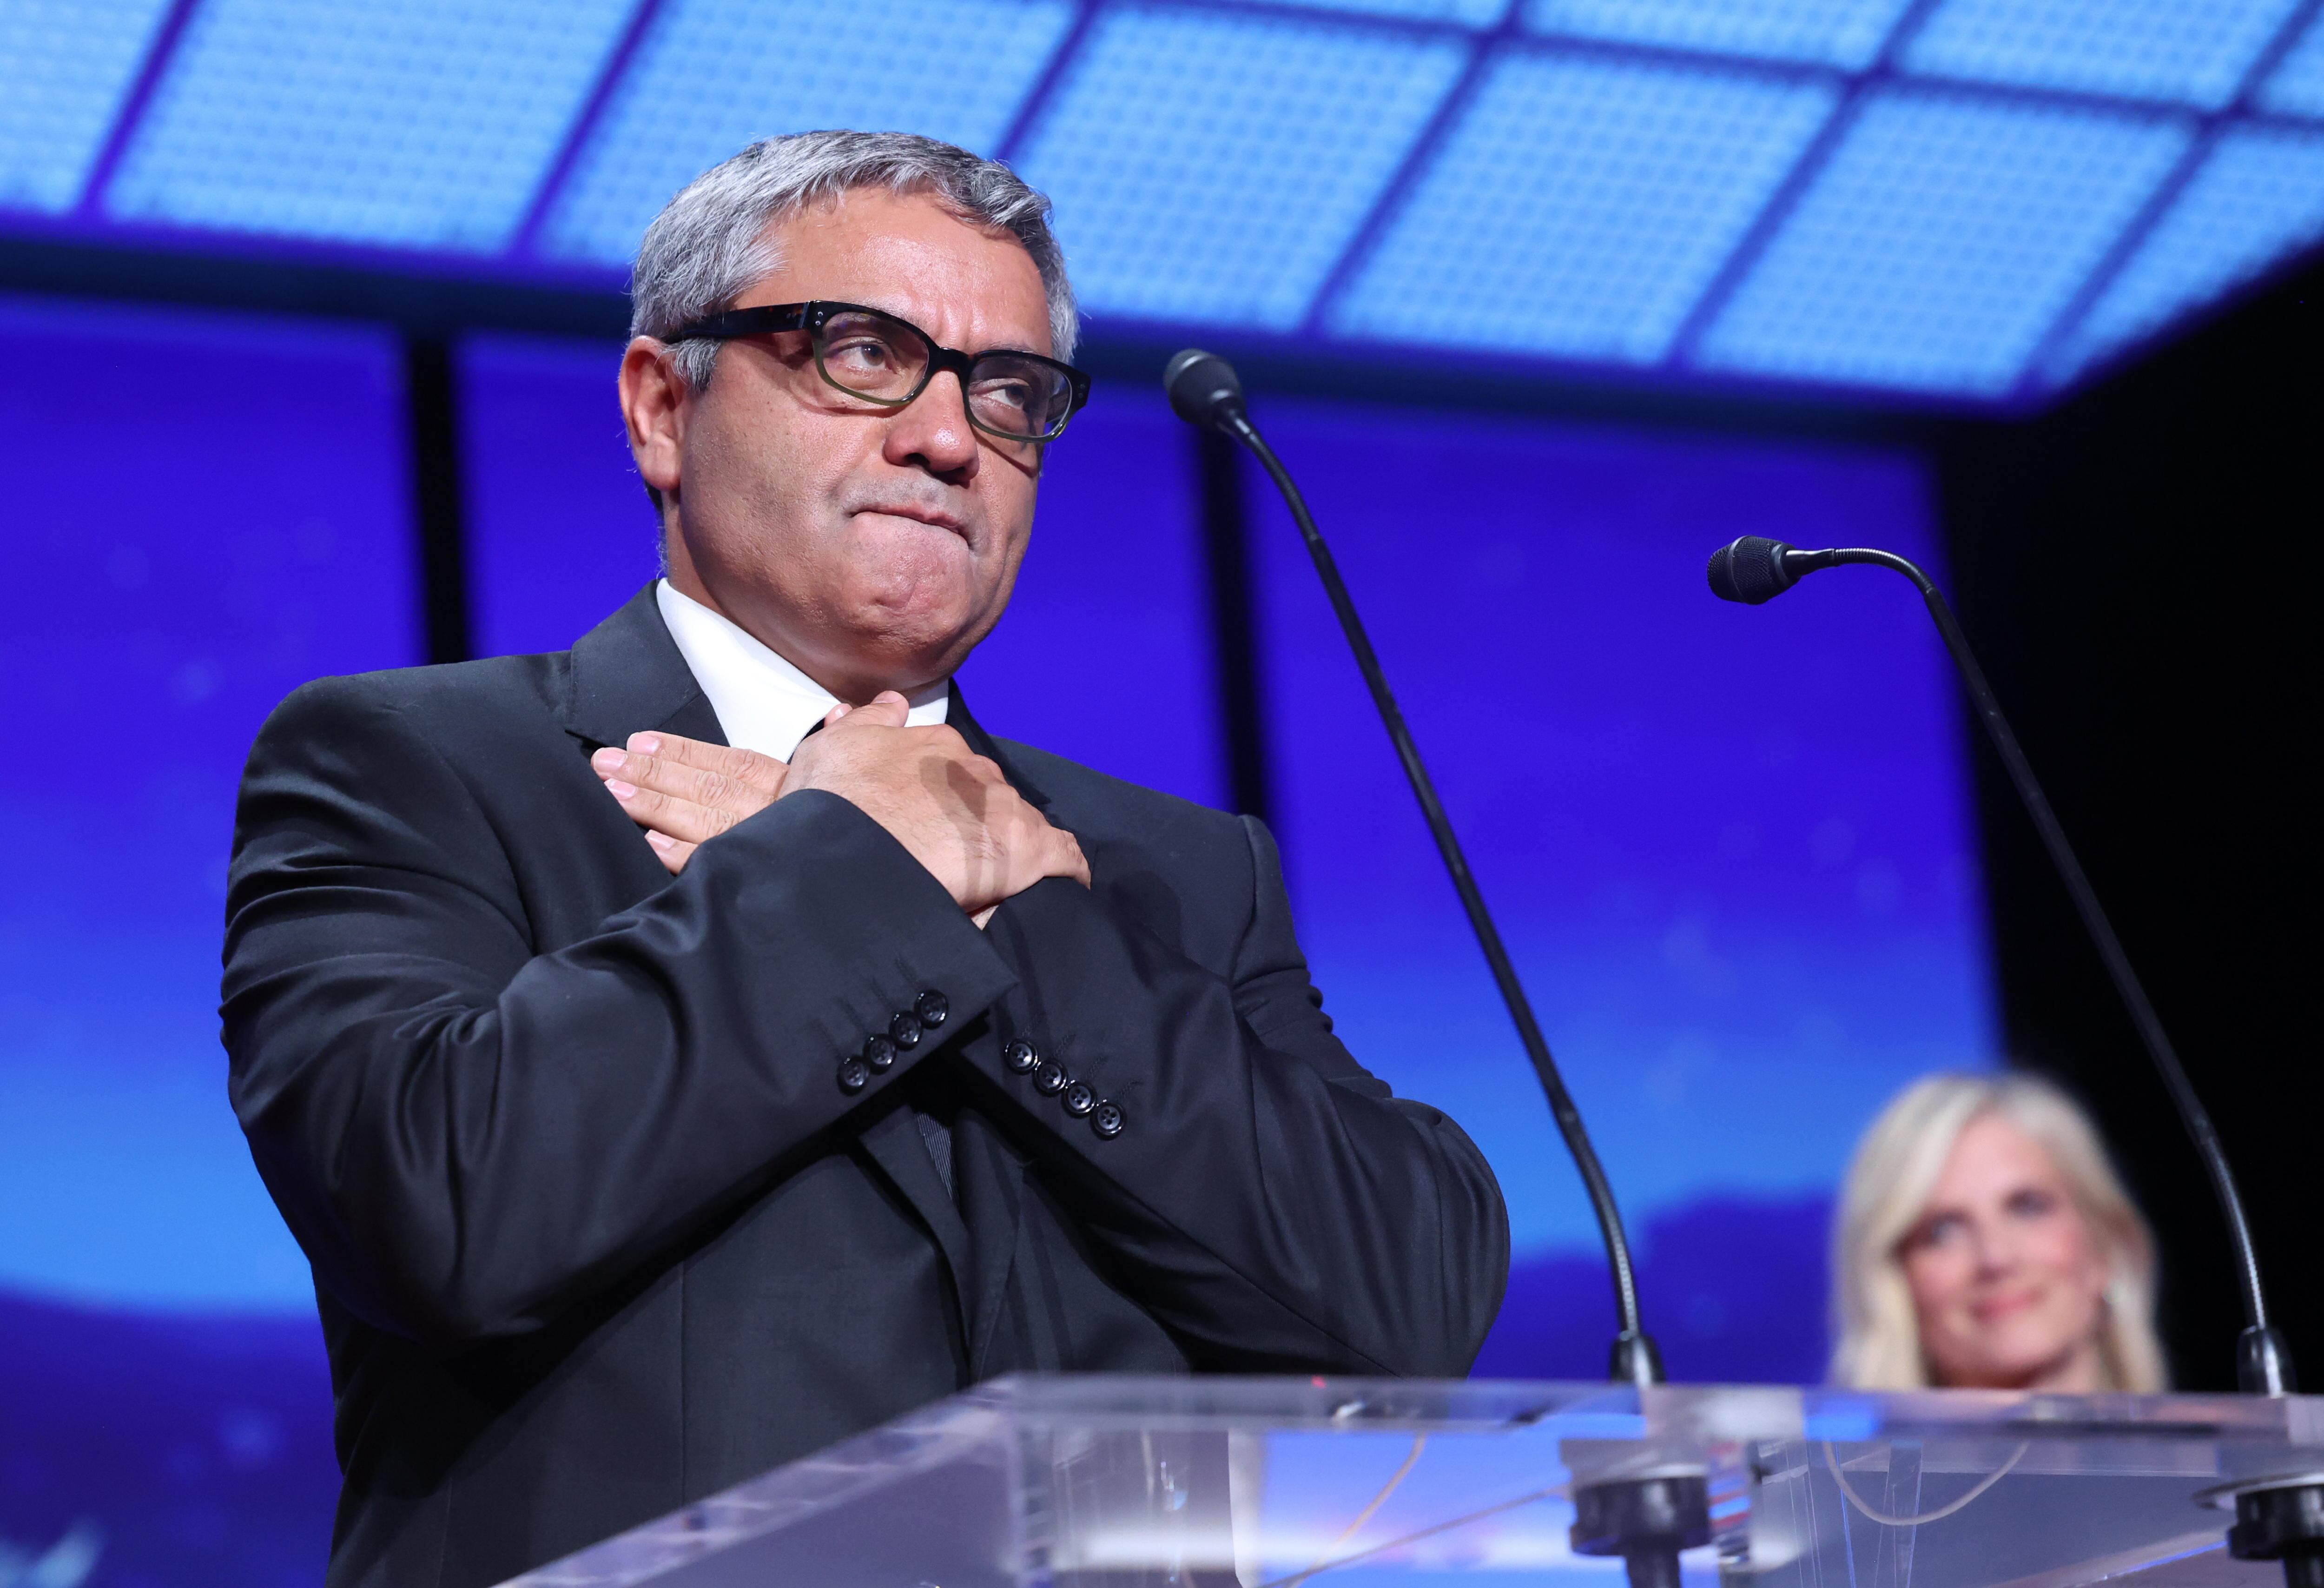 El director iraní Mohammad Rasoulof agradece su premio en el festival de Cannes.